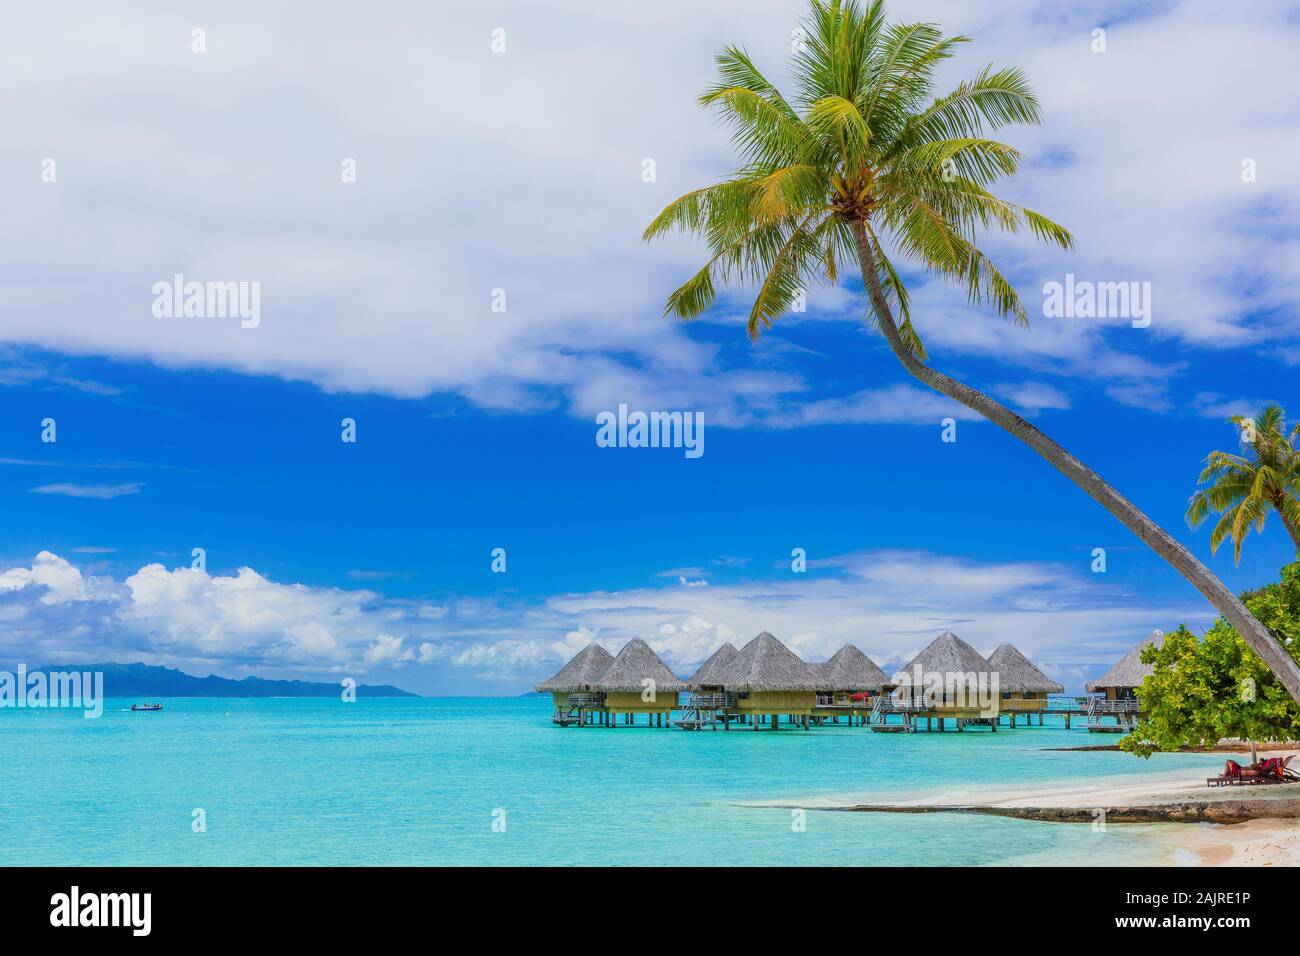 Bungalows sur pilotis de tropical resort, Bora Bora Island, près de Tahiti, Polynésie française. Banque D'Images